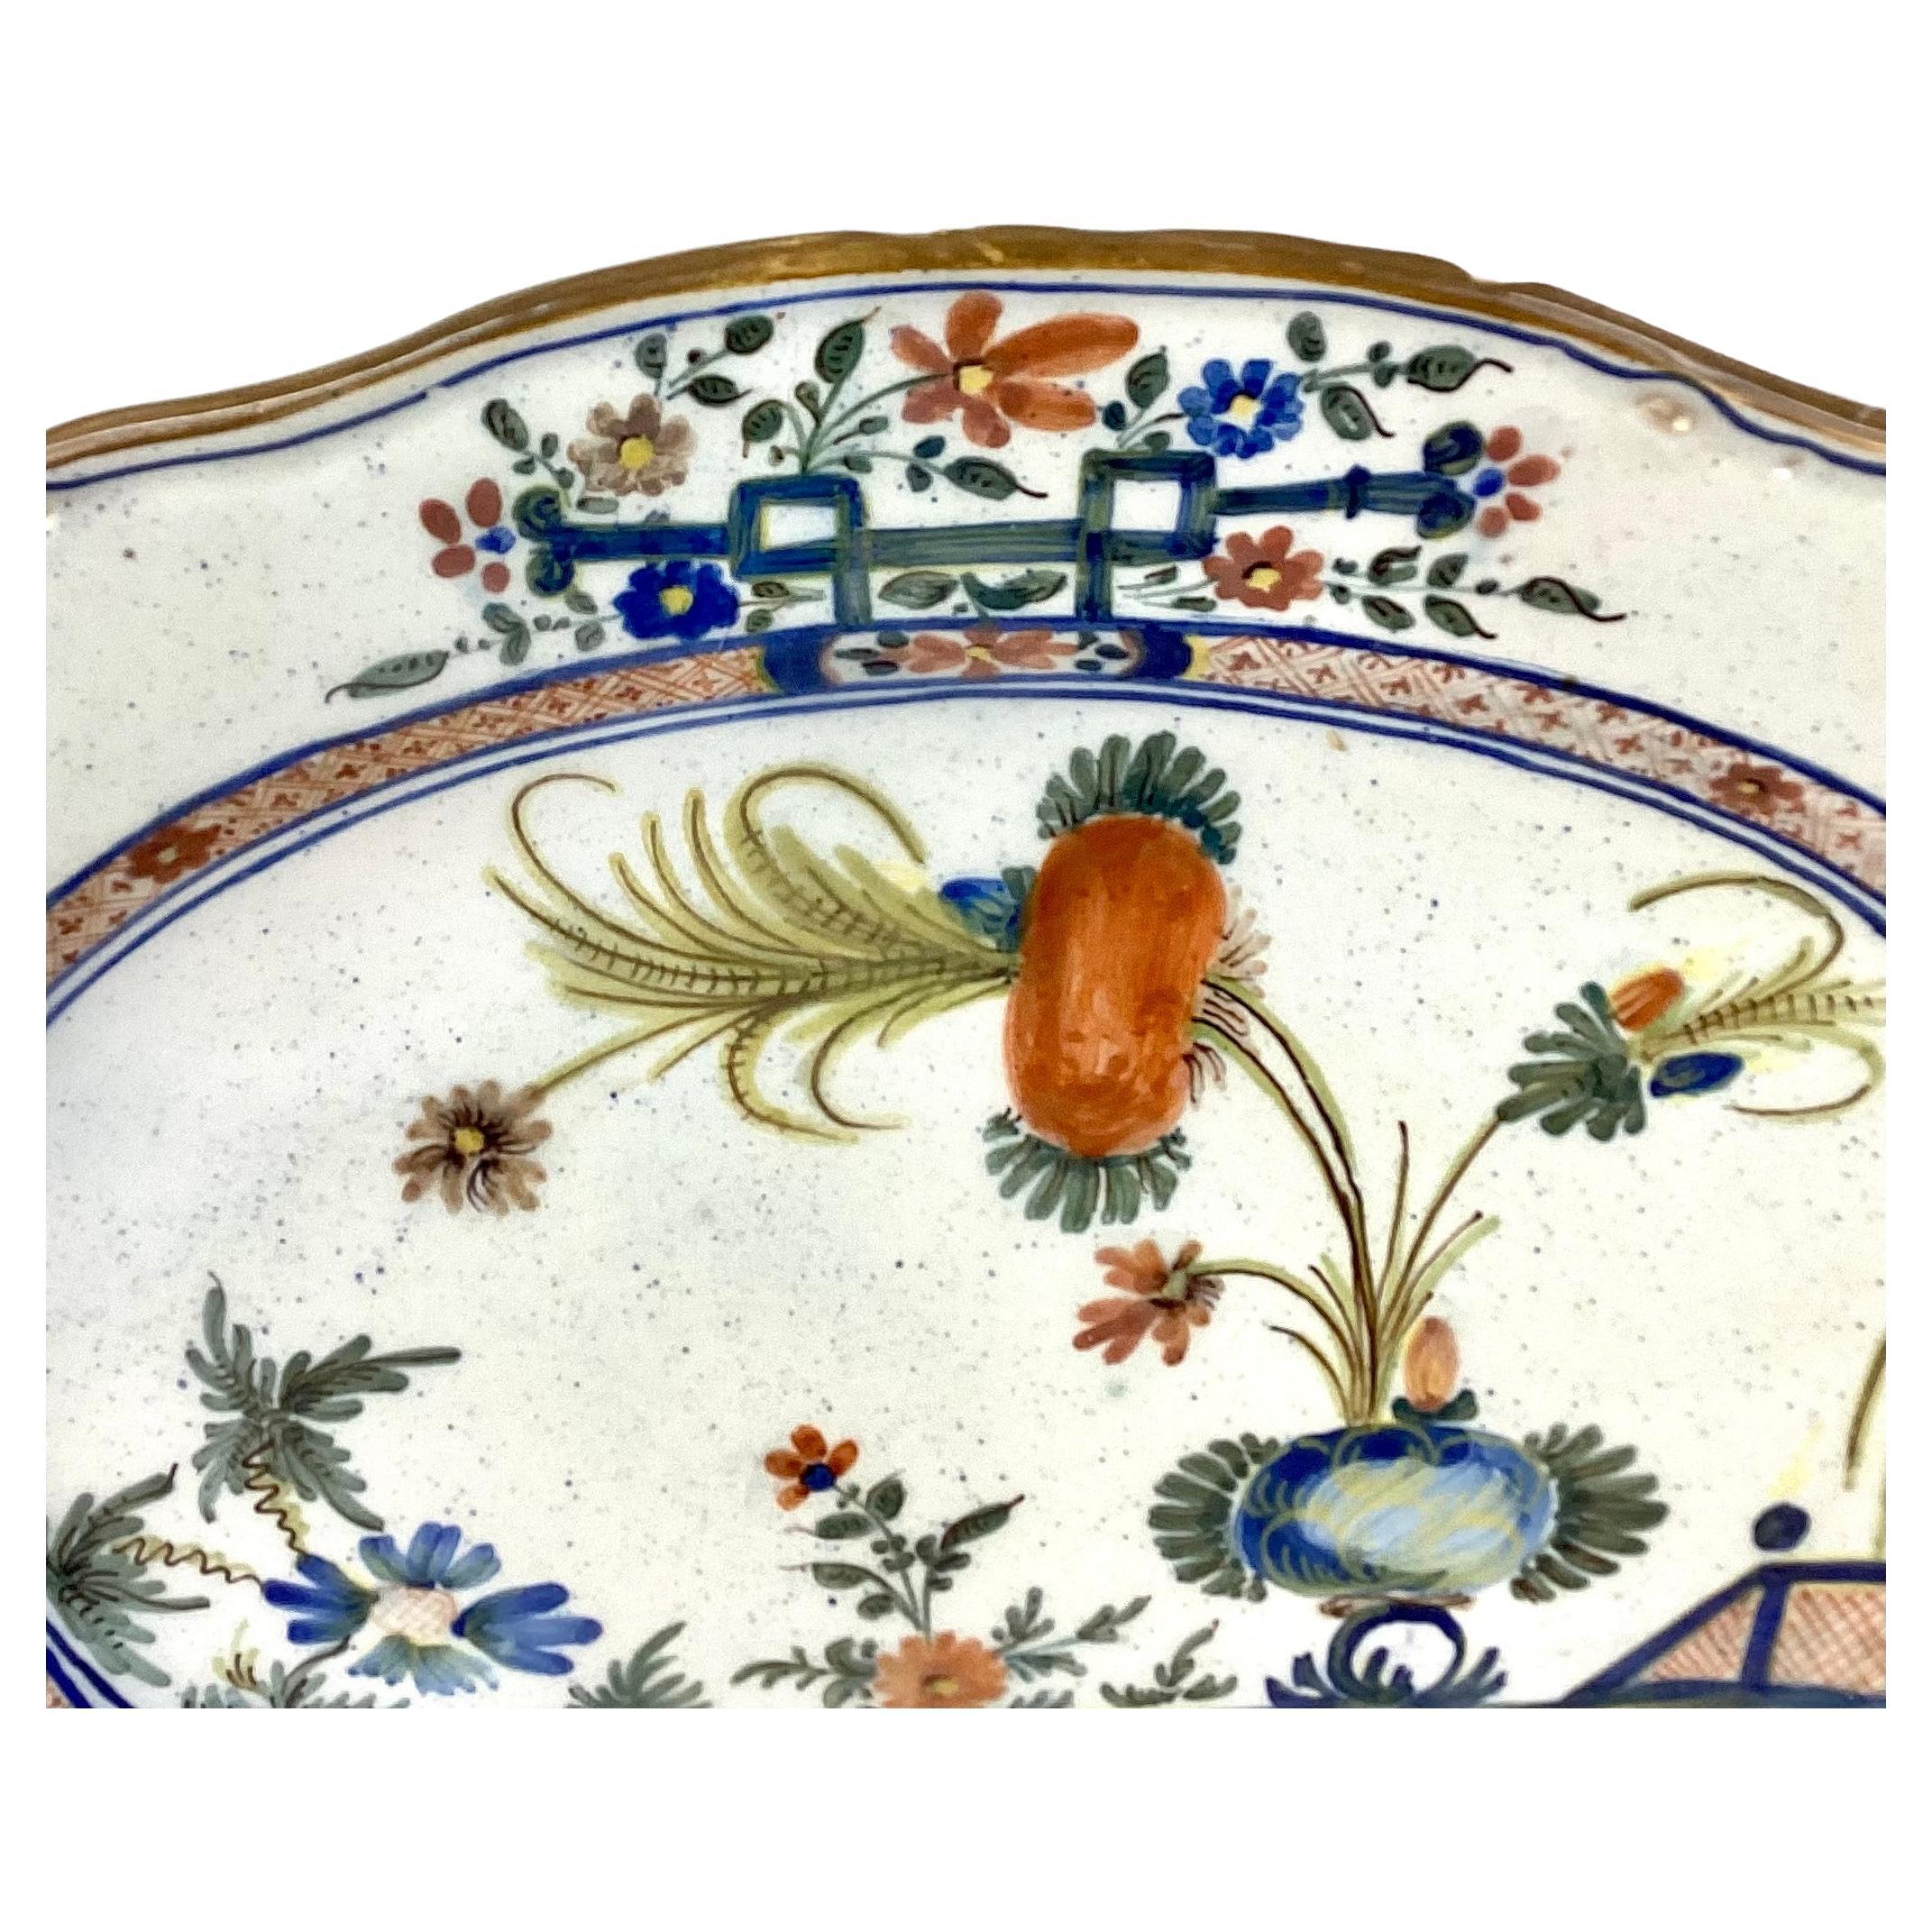 Grand plat de service en faïence italienne du XIXe siècle. Le plat en Faenza Garofano Blue Carnation est orné d'une flore aux couleurs bleu, vert et brun sur fond blanc. Blanc uni au verso, sans signature. 